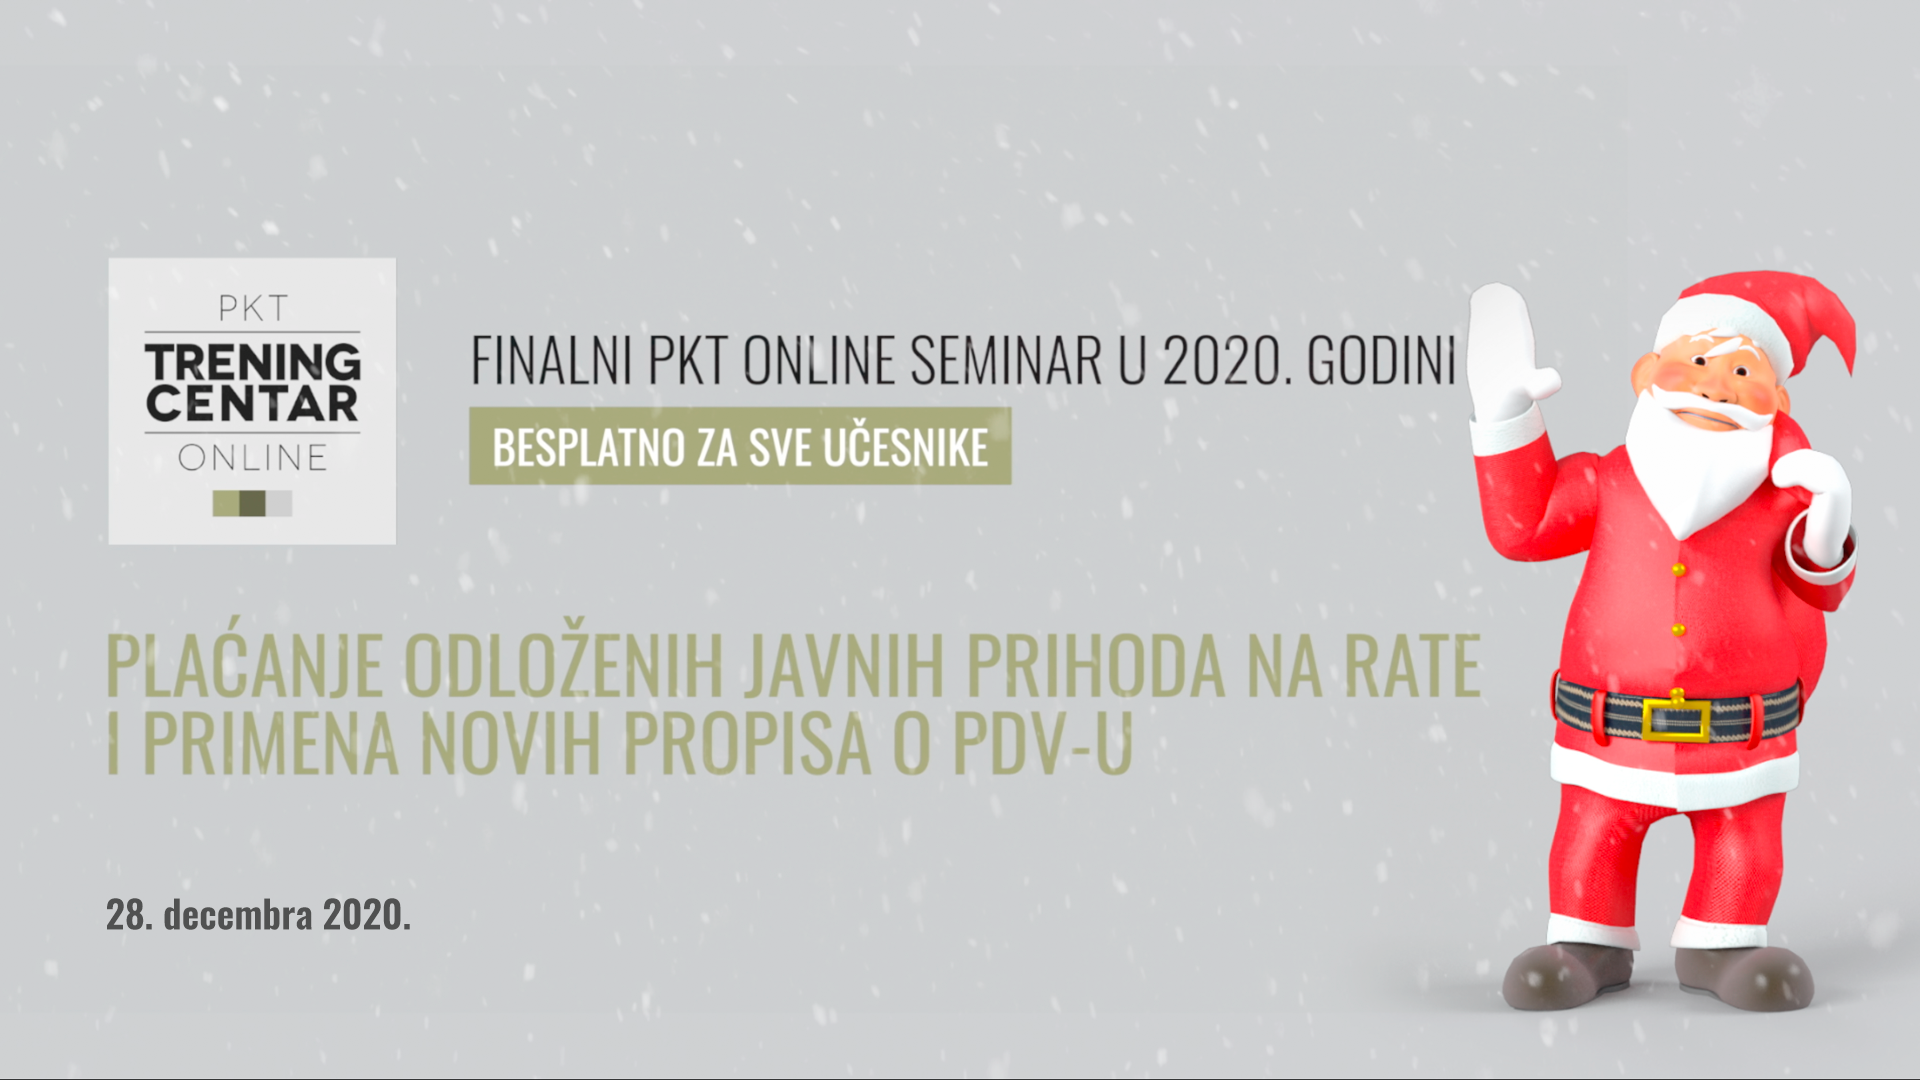 Finalni PKT seminar u 2020: Plaćanje odloženih javnih prihoda na rate i primena novih propisa o PDVu